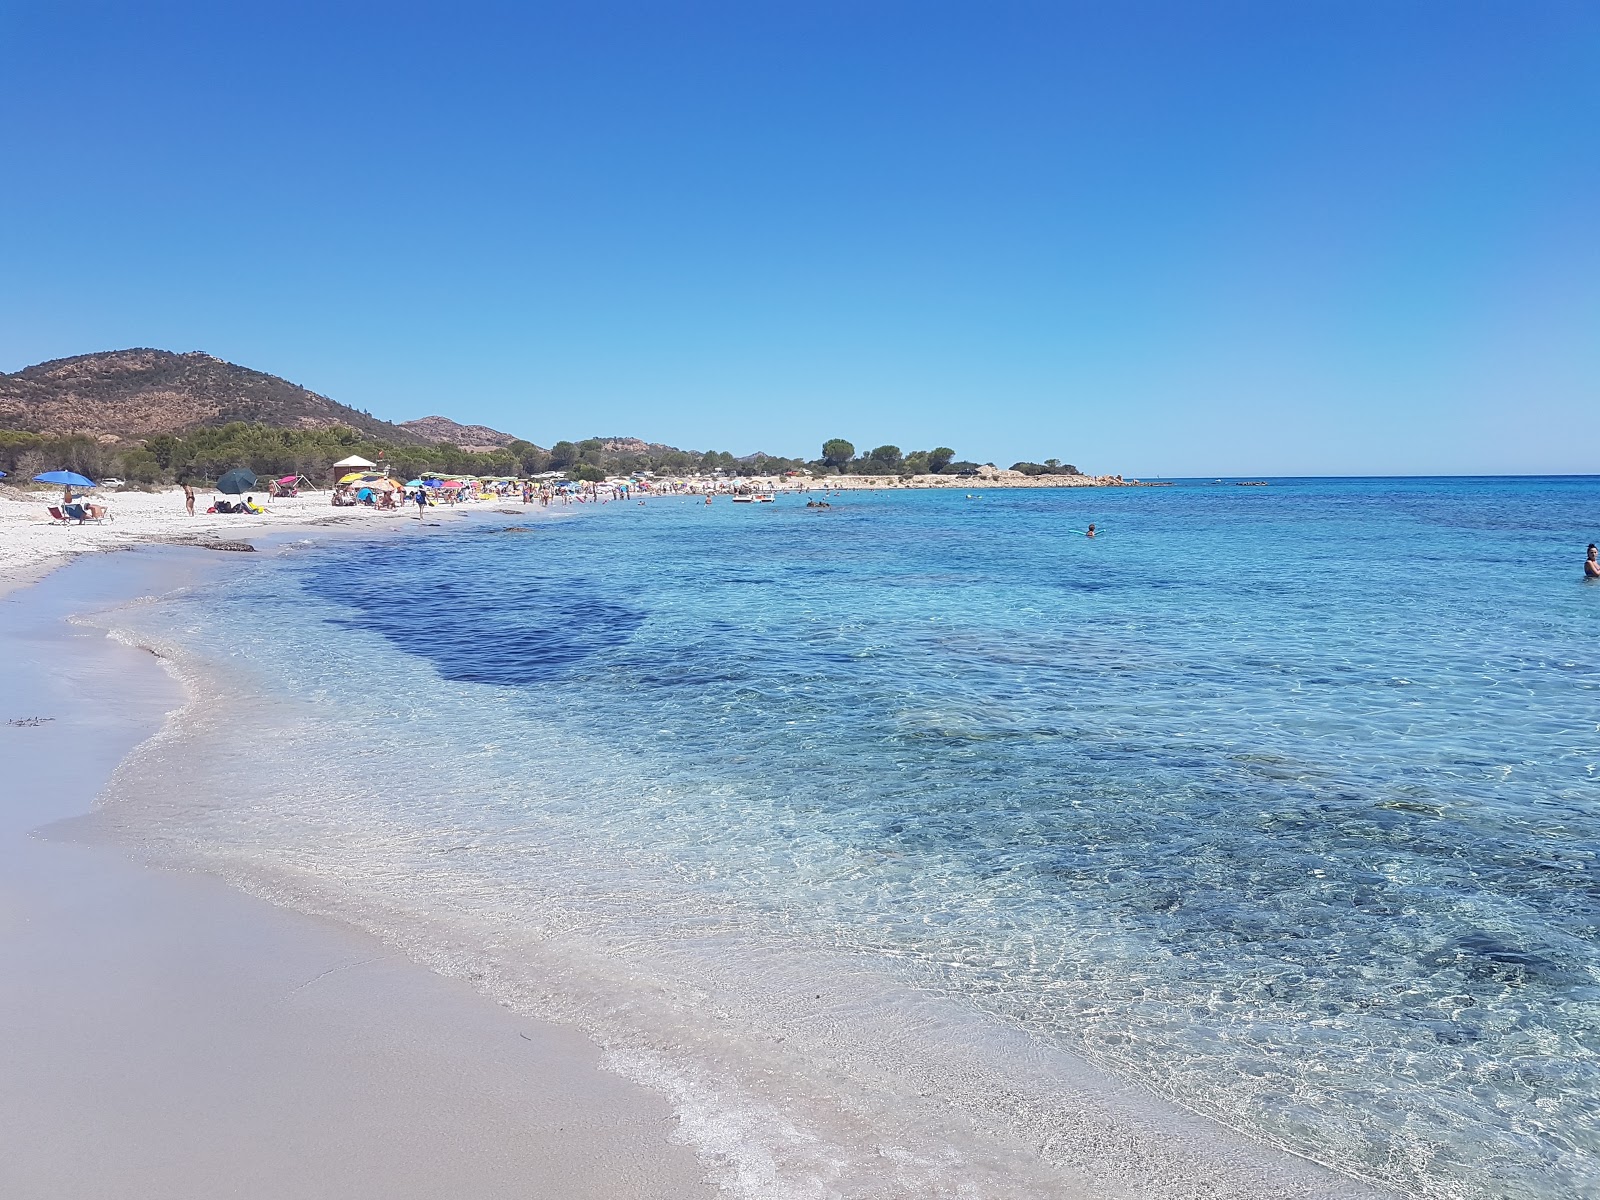 Sa Curcurica Plajı'in fotoğrafı parlak ince kum yüzey ile